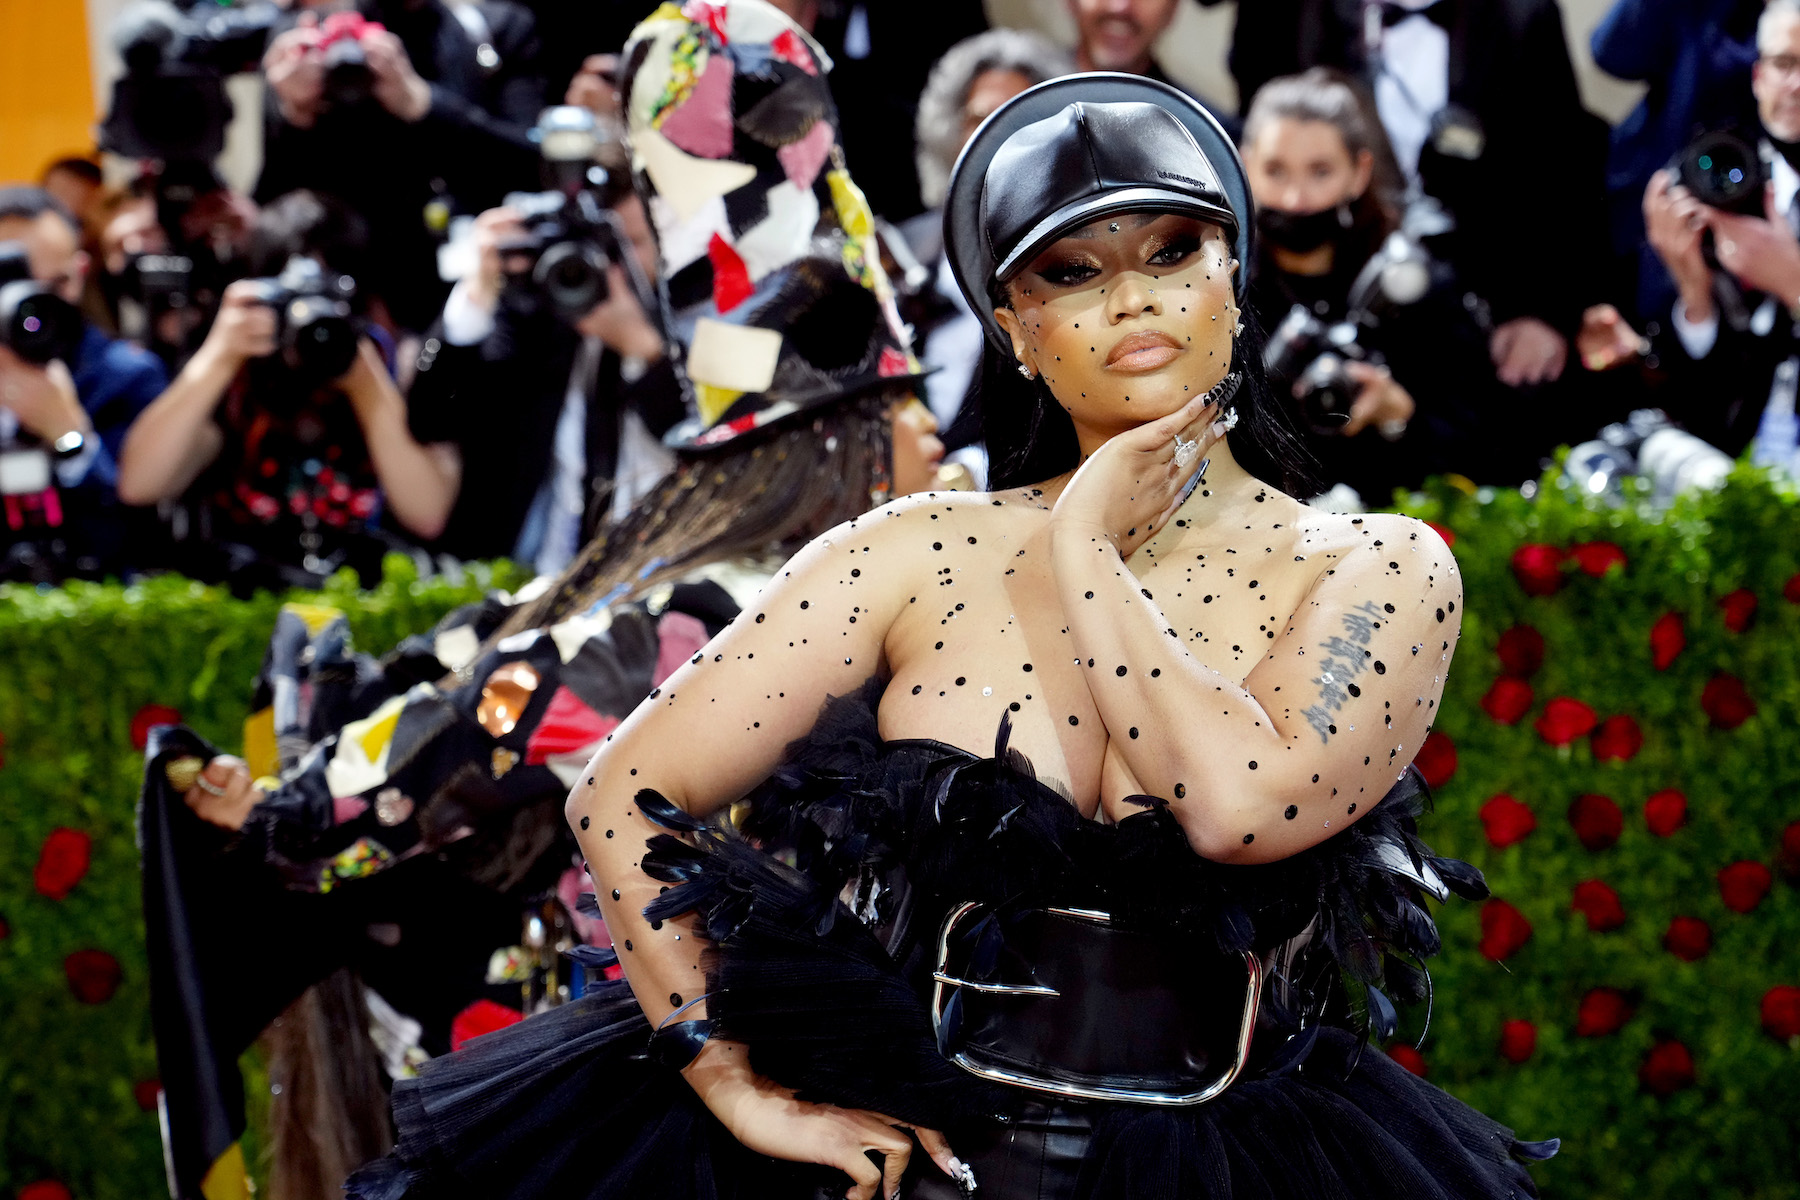 Nicki Minaj Samples Rick James and Reveals Her Inner 'Super Freaky Girl' on New Song